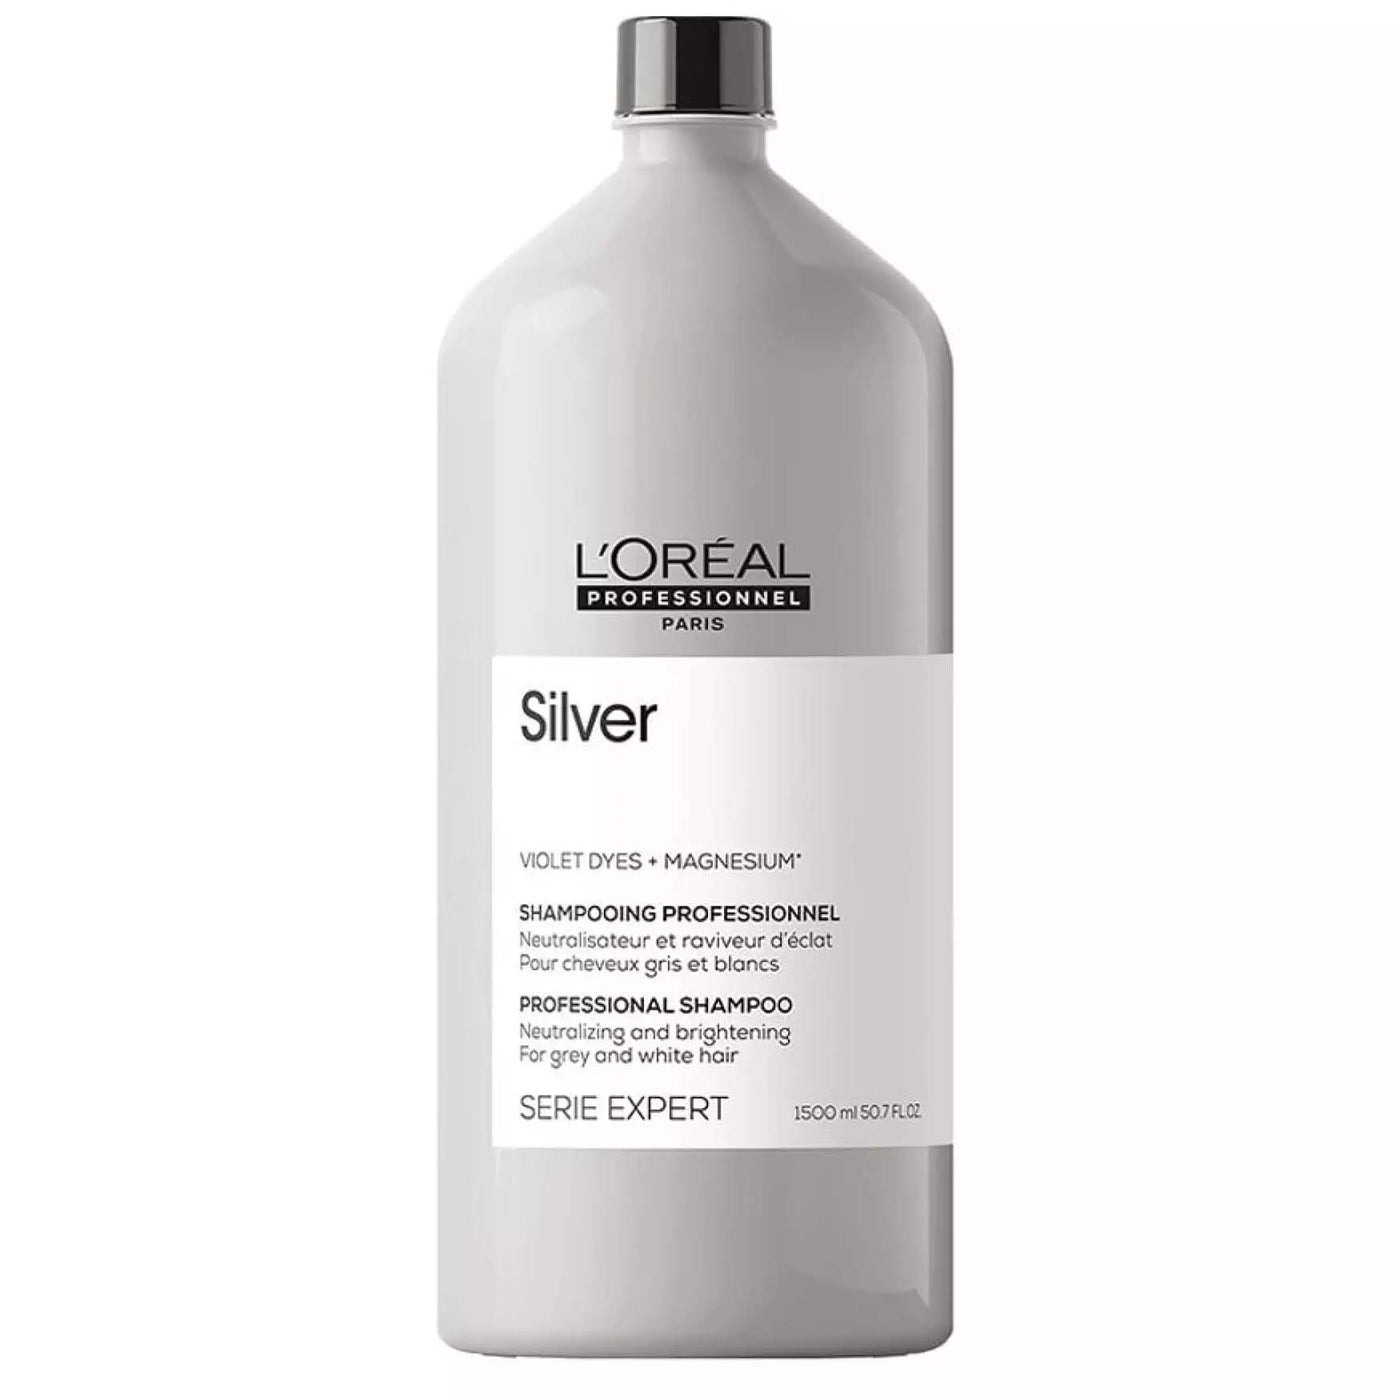 L'Oreal Professionnel Silver Shampoo 1.5 Litre